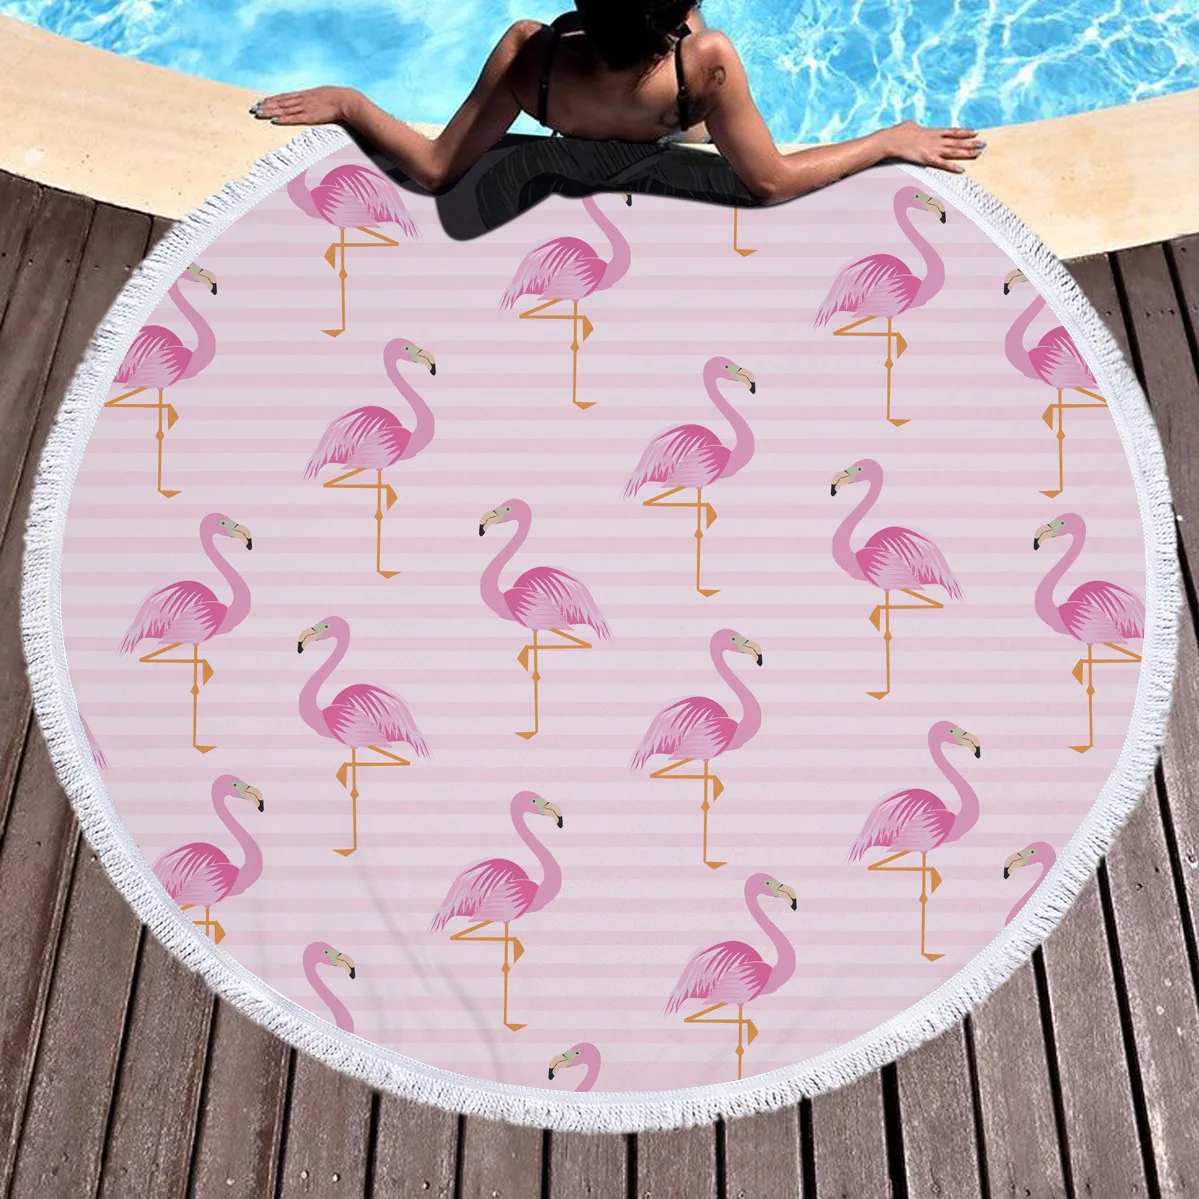 Горячая тропический Фламинго круглая Пляжная накидка для пляжа коврик полотенце плед, коврик для йоги Лето саронг плащ кемпинг коврик